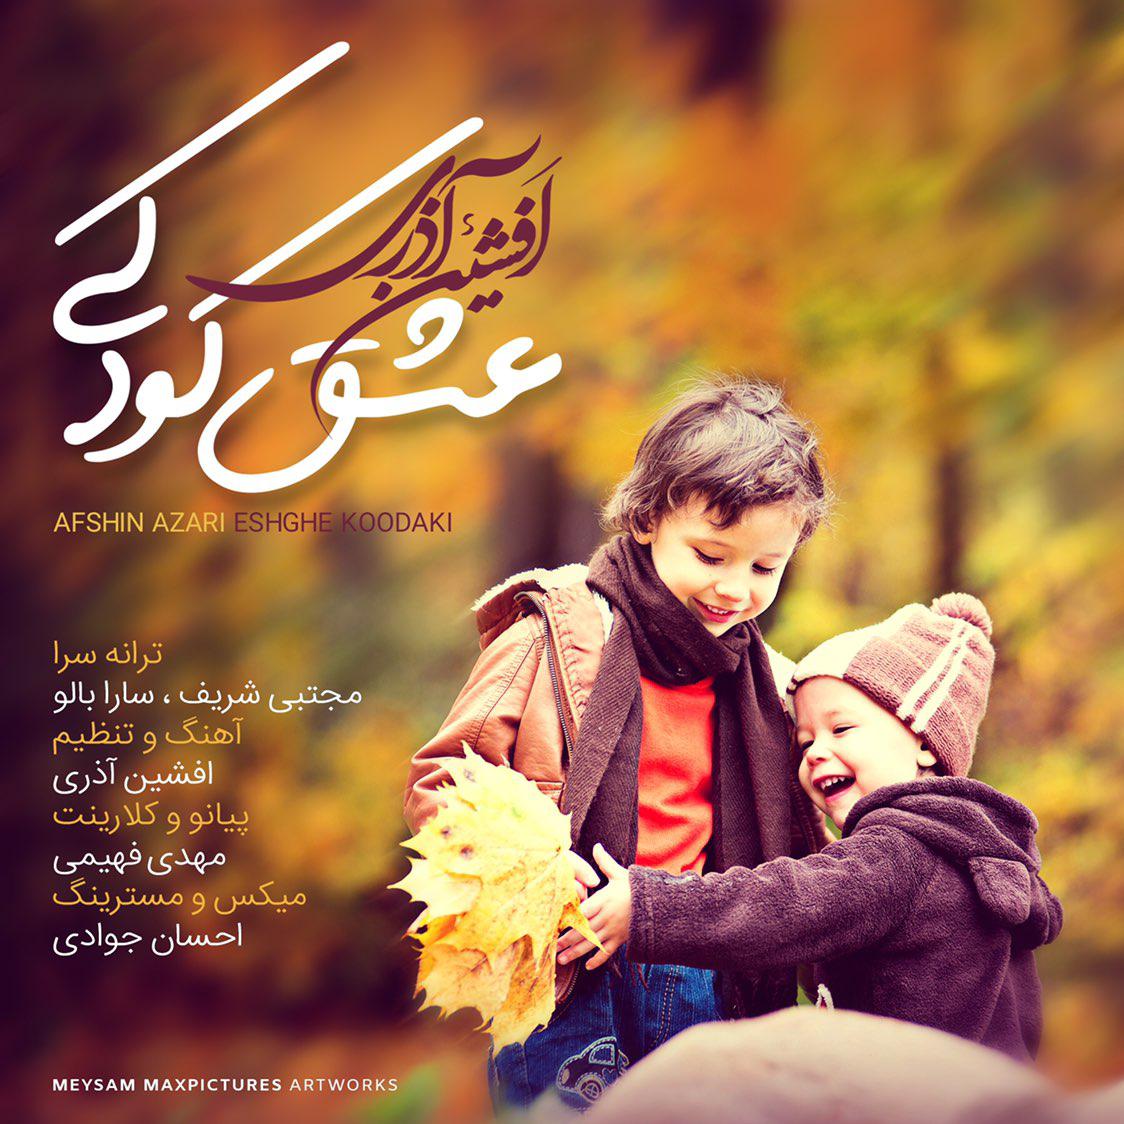  دانلود آهنگ جدید افشین آذری - عشق کودکی | Download New Music By Afshin Azari - Eshghe Koodaki